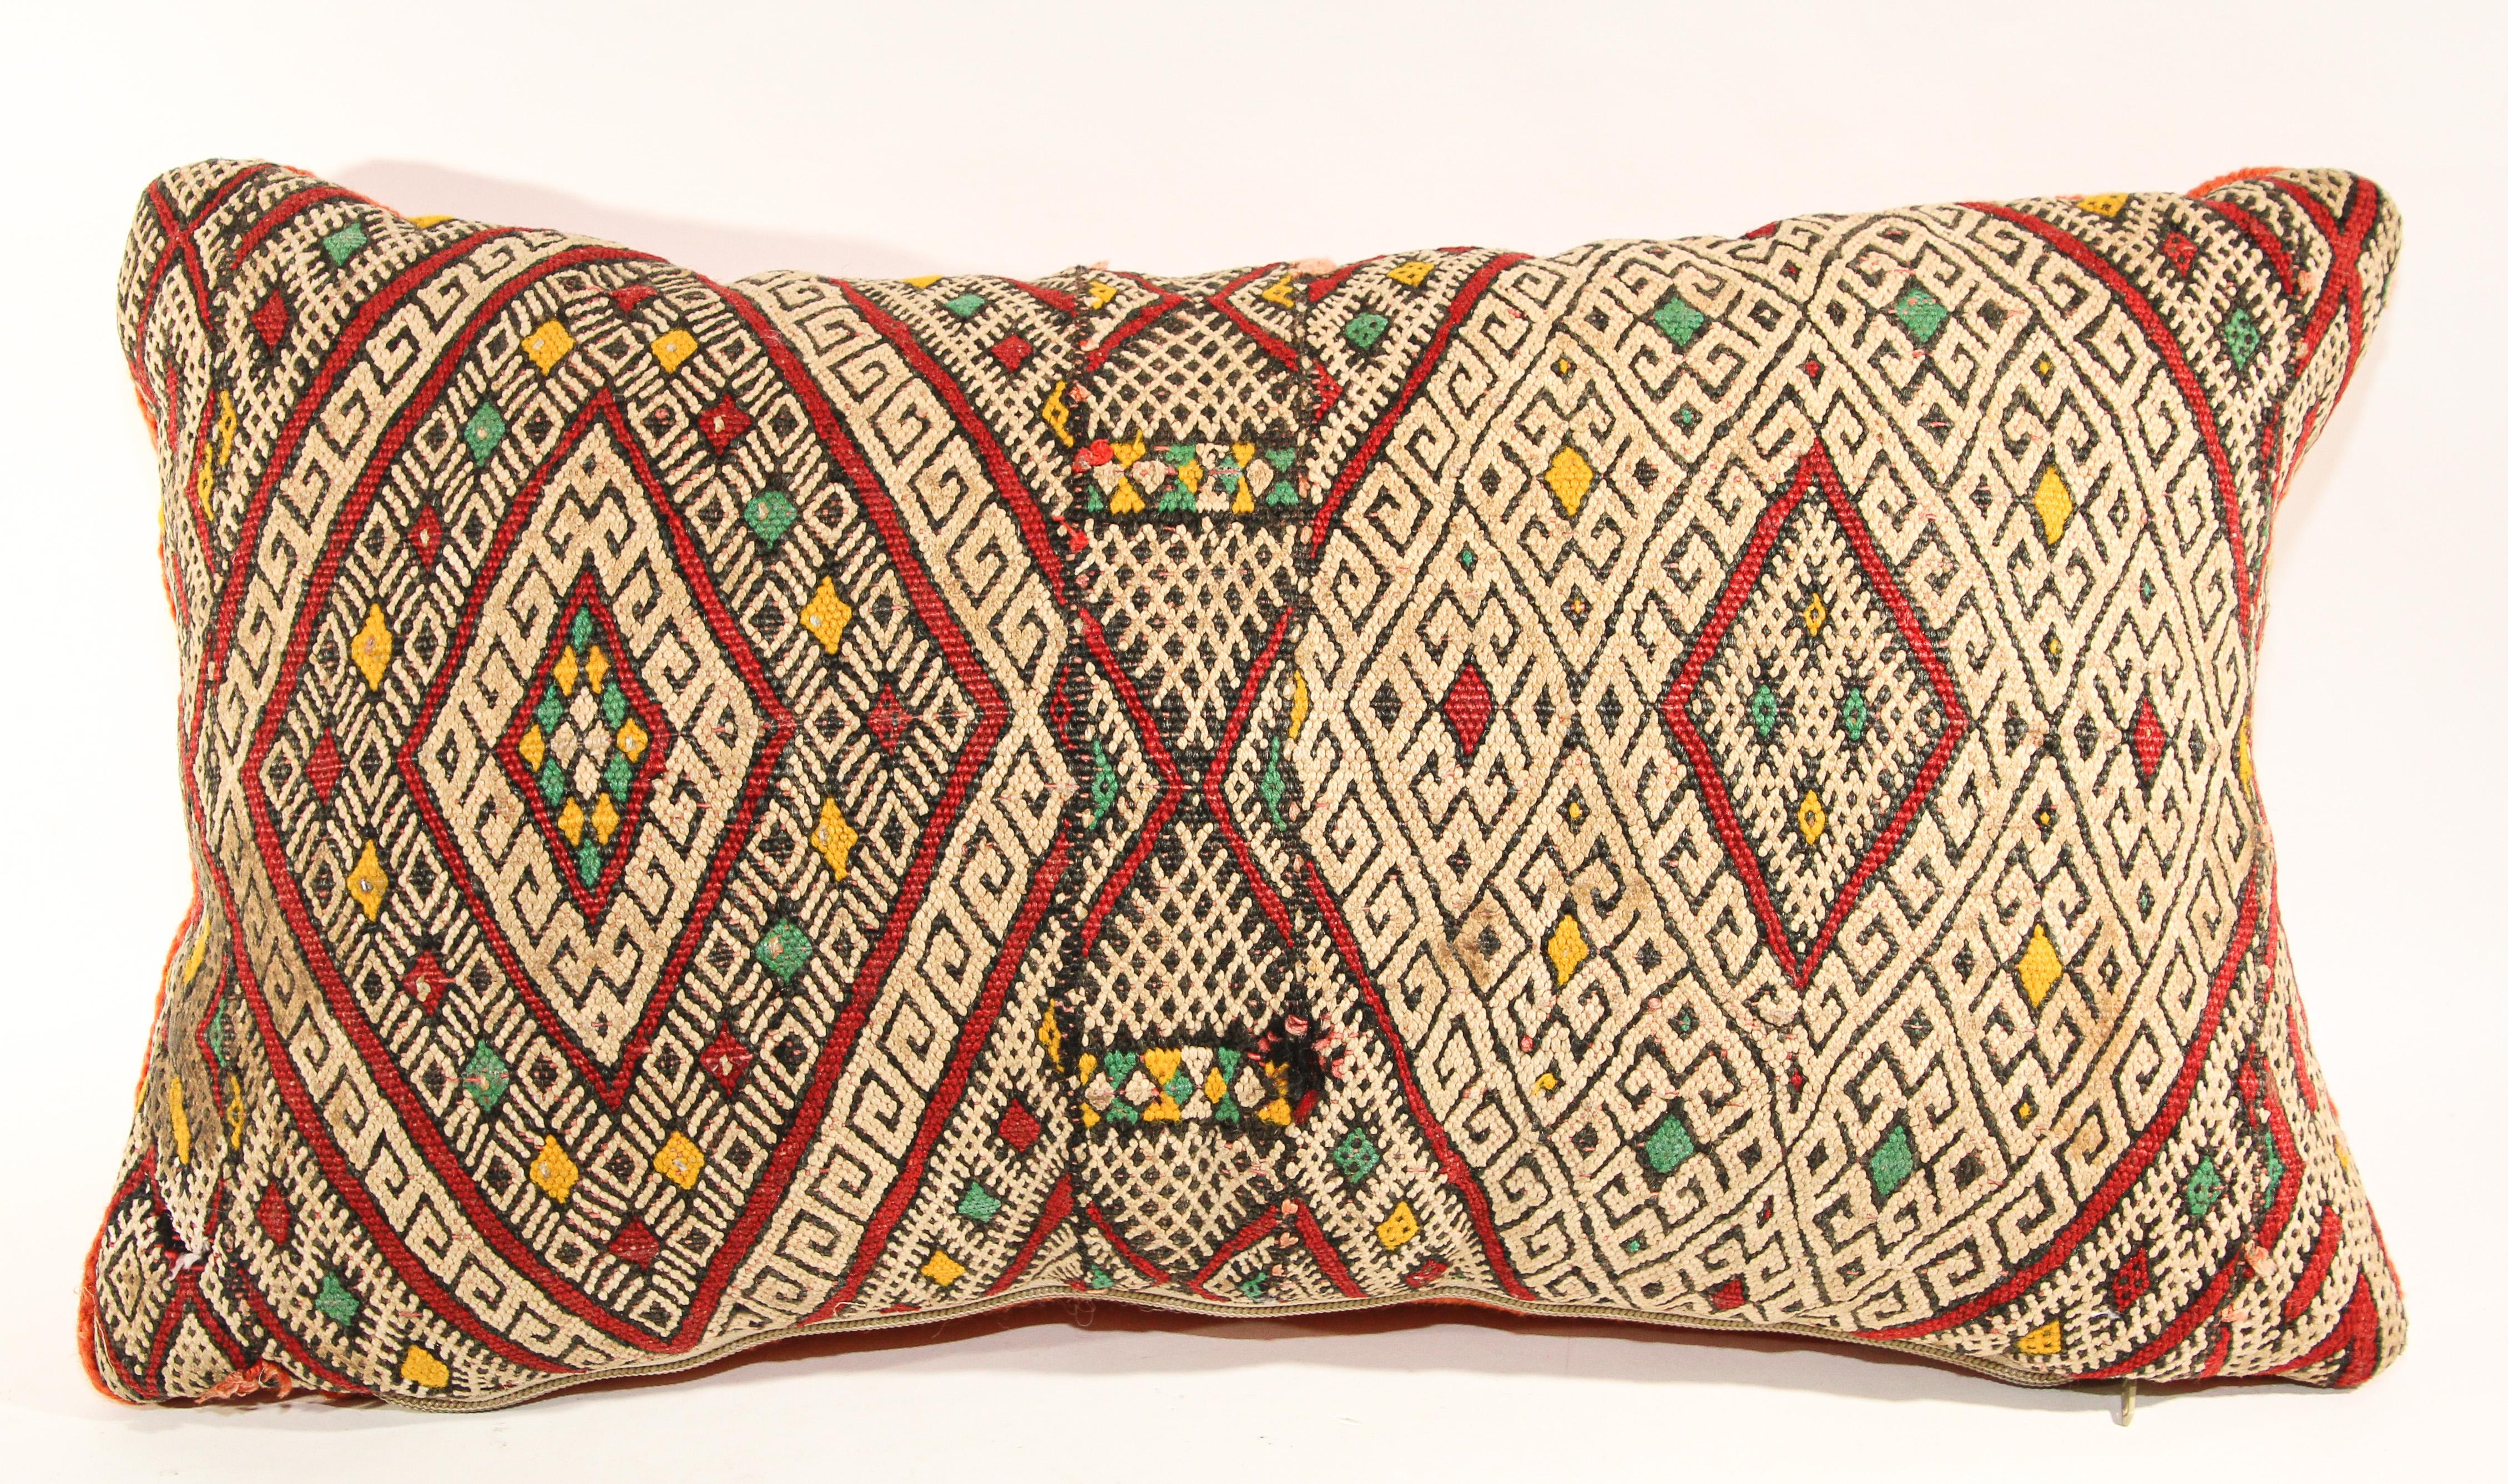 Marokkanische authentische Berber ethnischen handgewebten Stammes-Kissen aus einem Vintage-Teppich gemacht.die Vorder-und die Rückseite sind aus einem anderen Teppich, vorne ist mehr aufwendig und zurück ist mehr plain.Geometrische nordafrikanischen